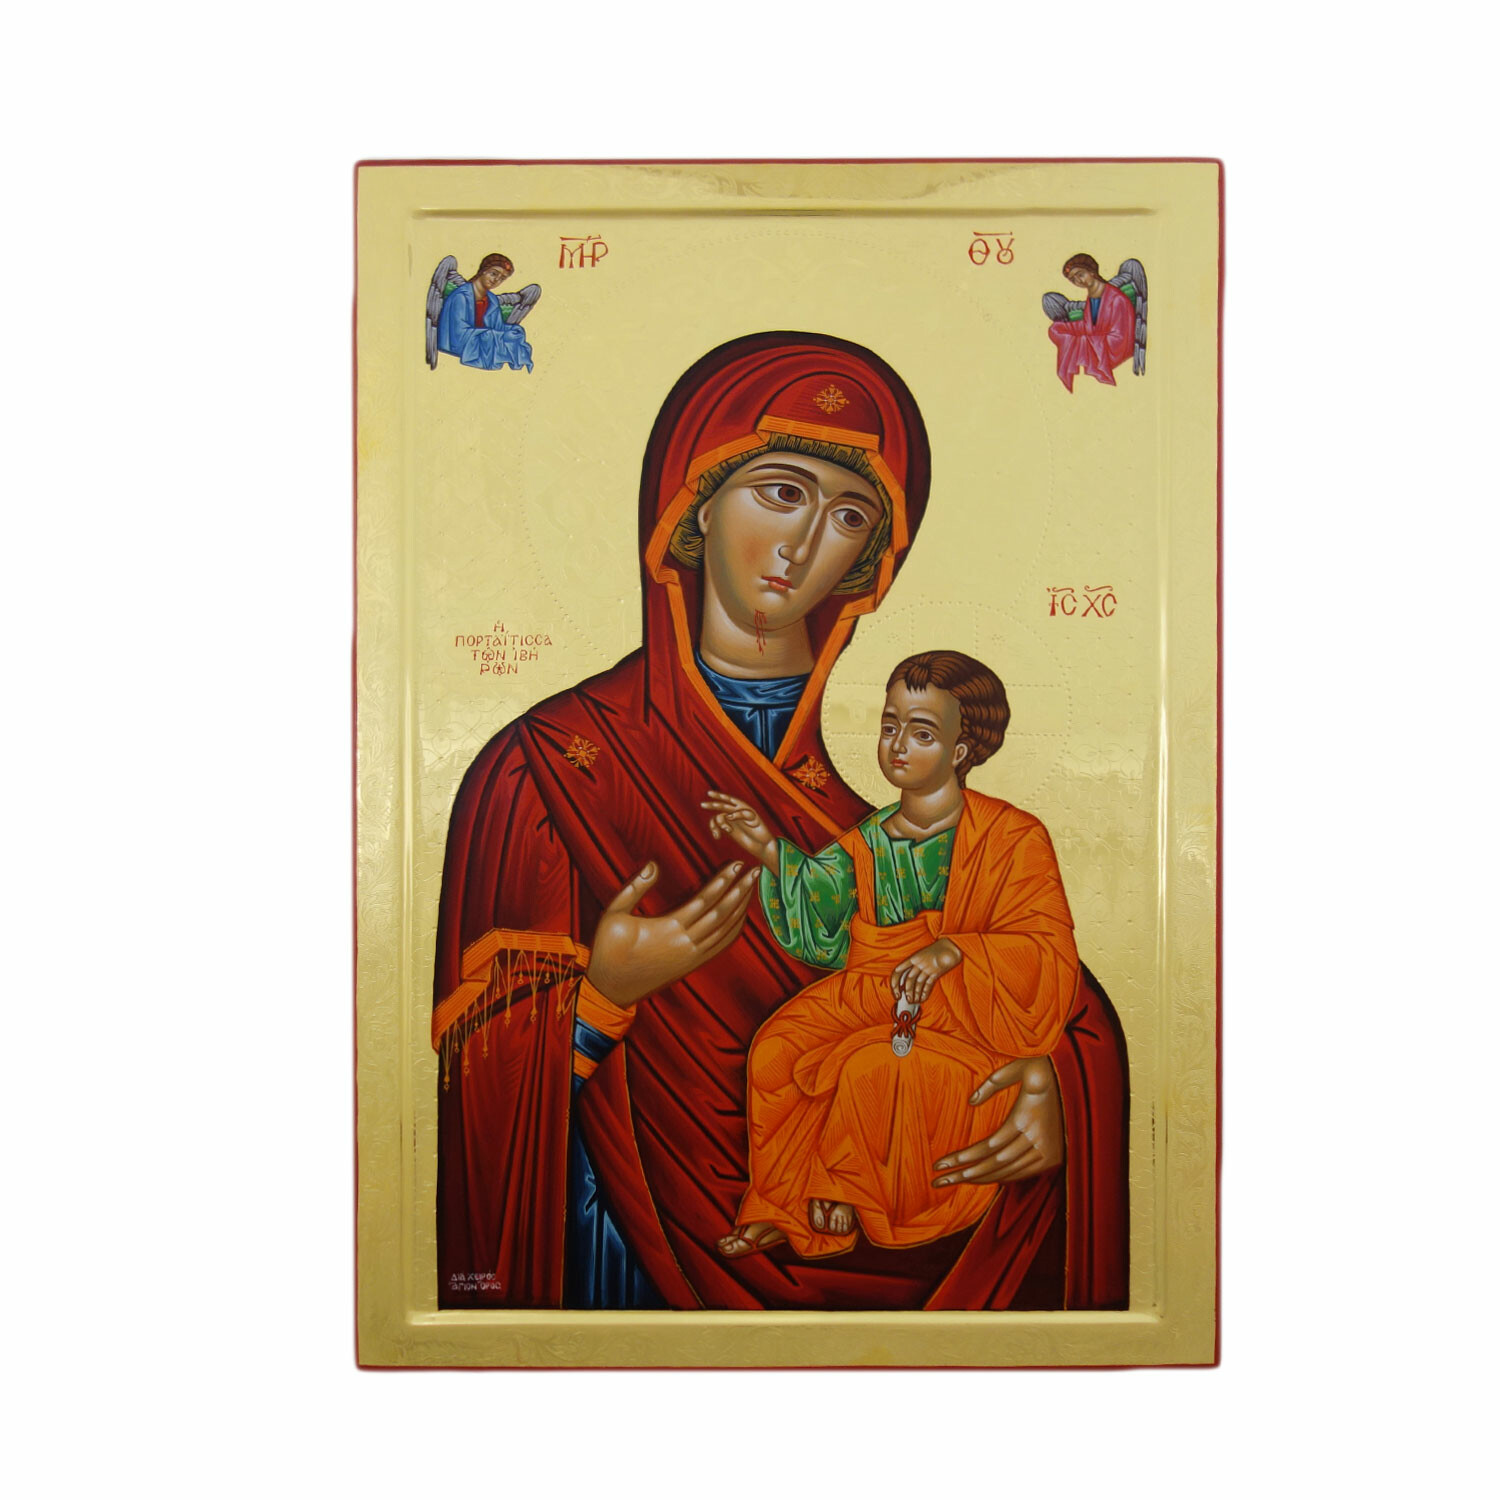 Virgin Mary Portaitissa